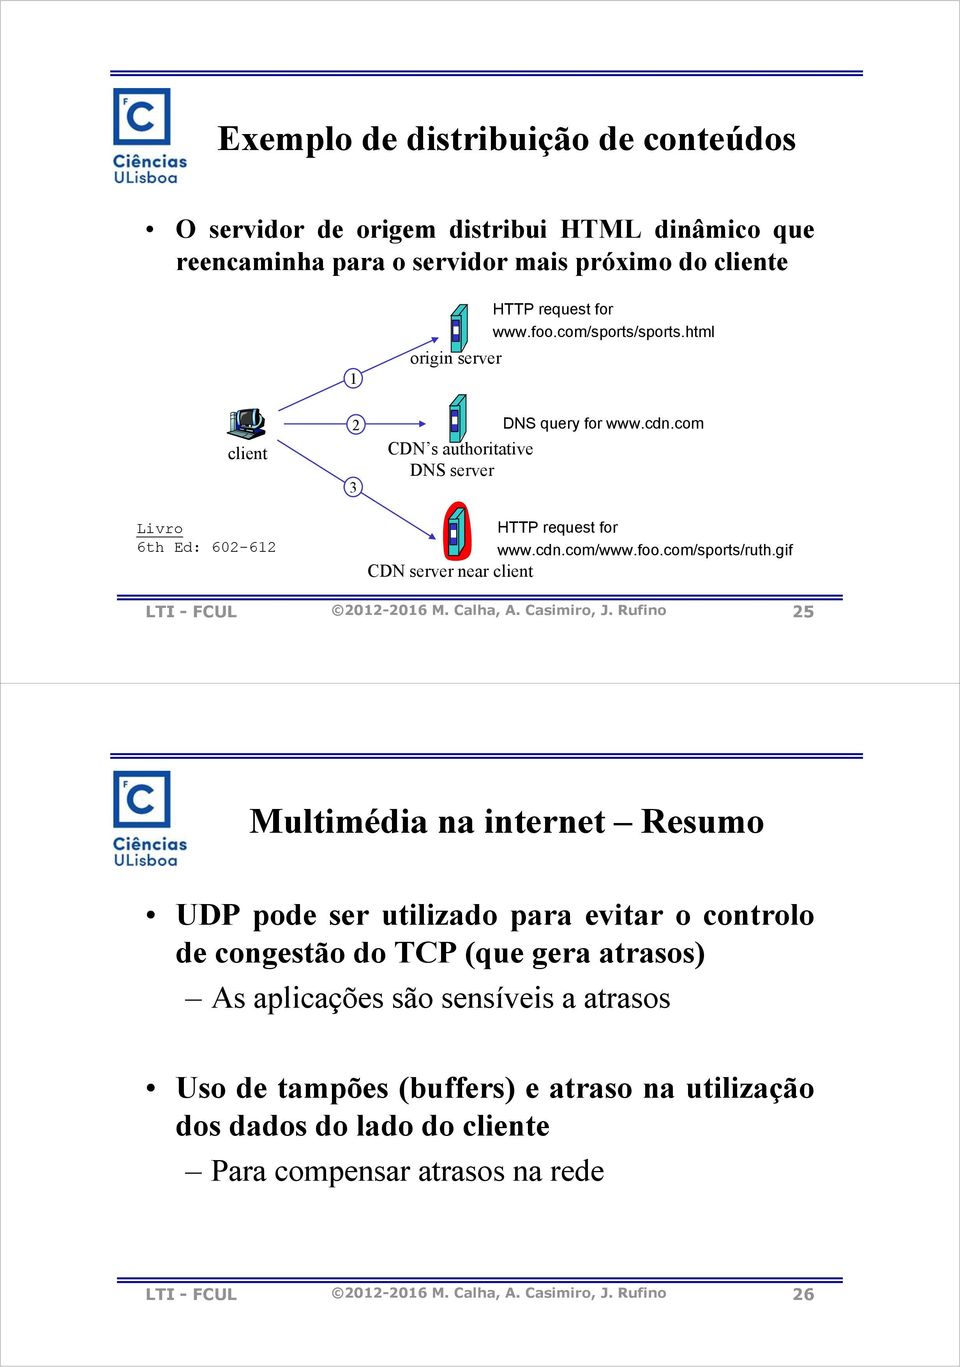 gif CDN server near client LTI - FCUL 2012-2016 M. Calha, A. Casimiro, J.